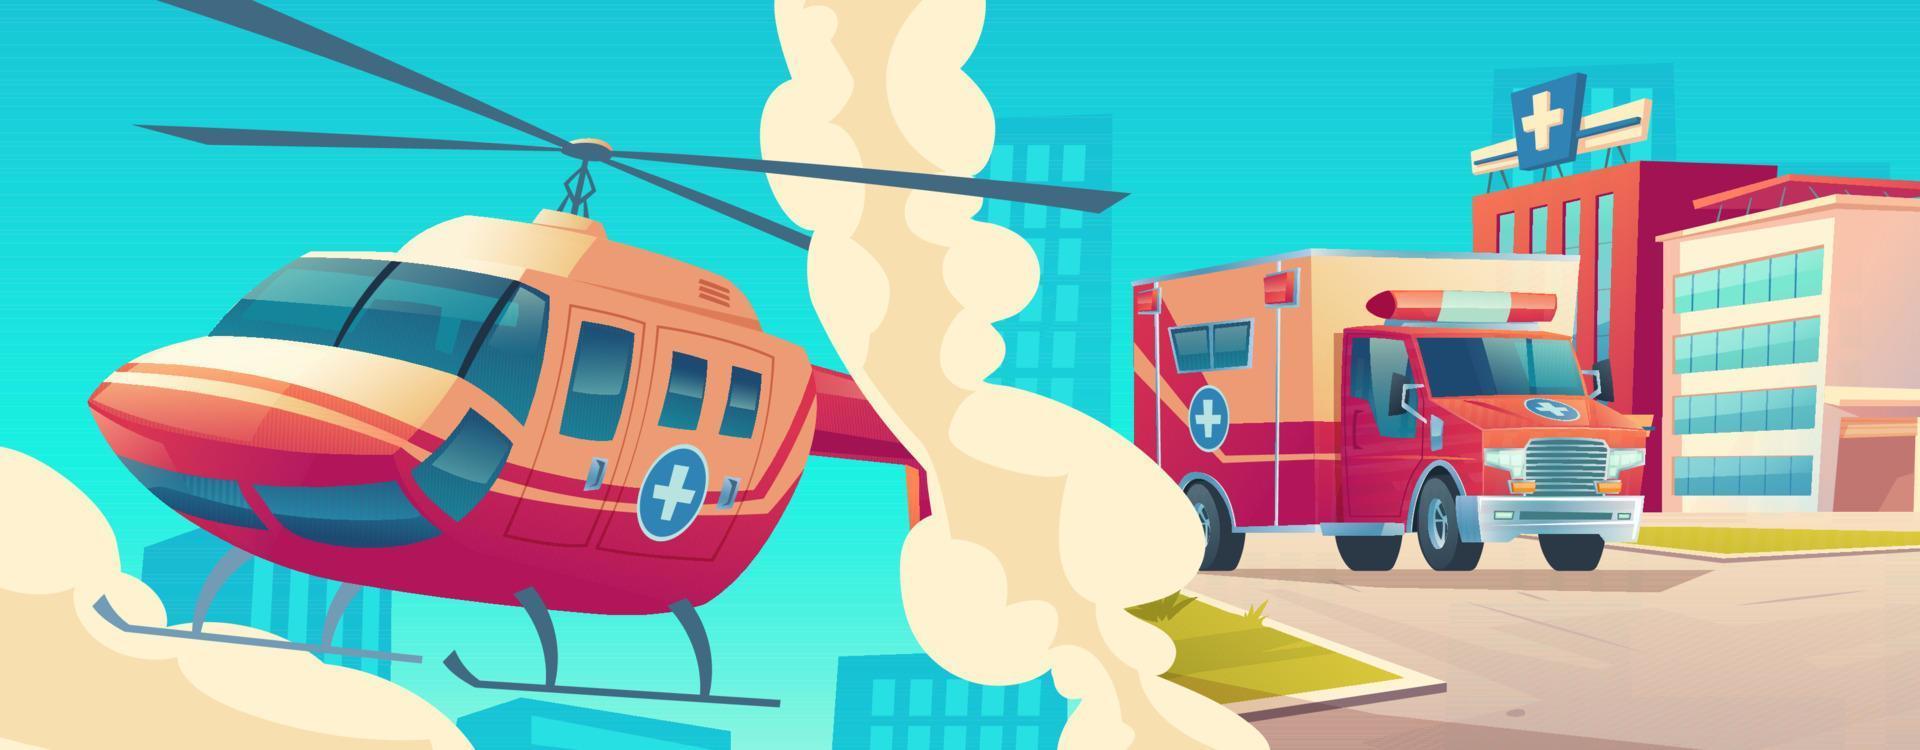 Rettungsdienst, medizinischer Hubschrauber und Auto vektor